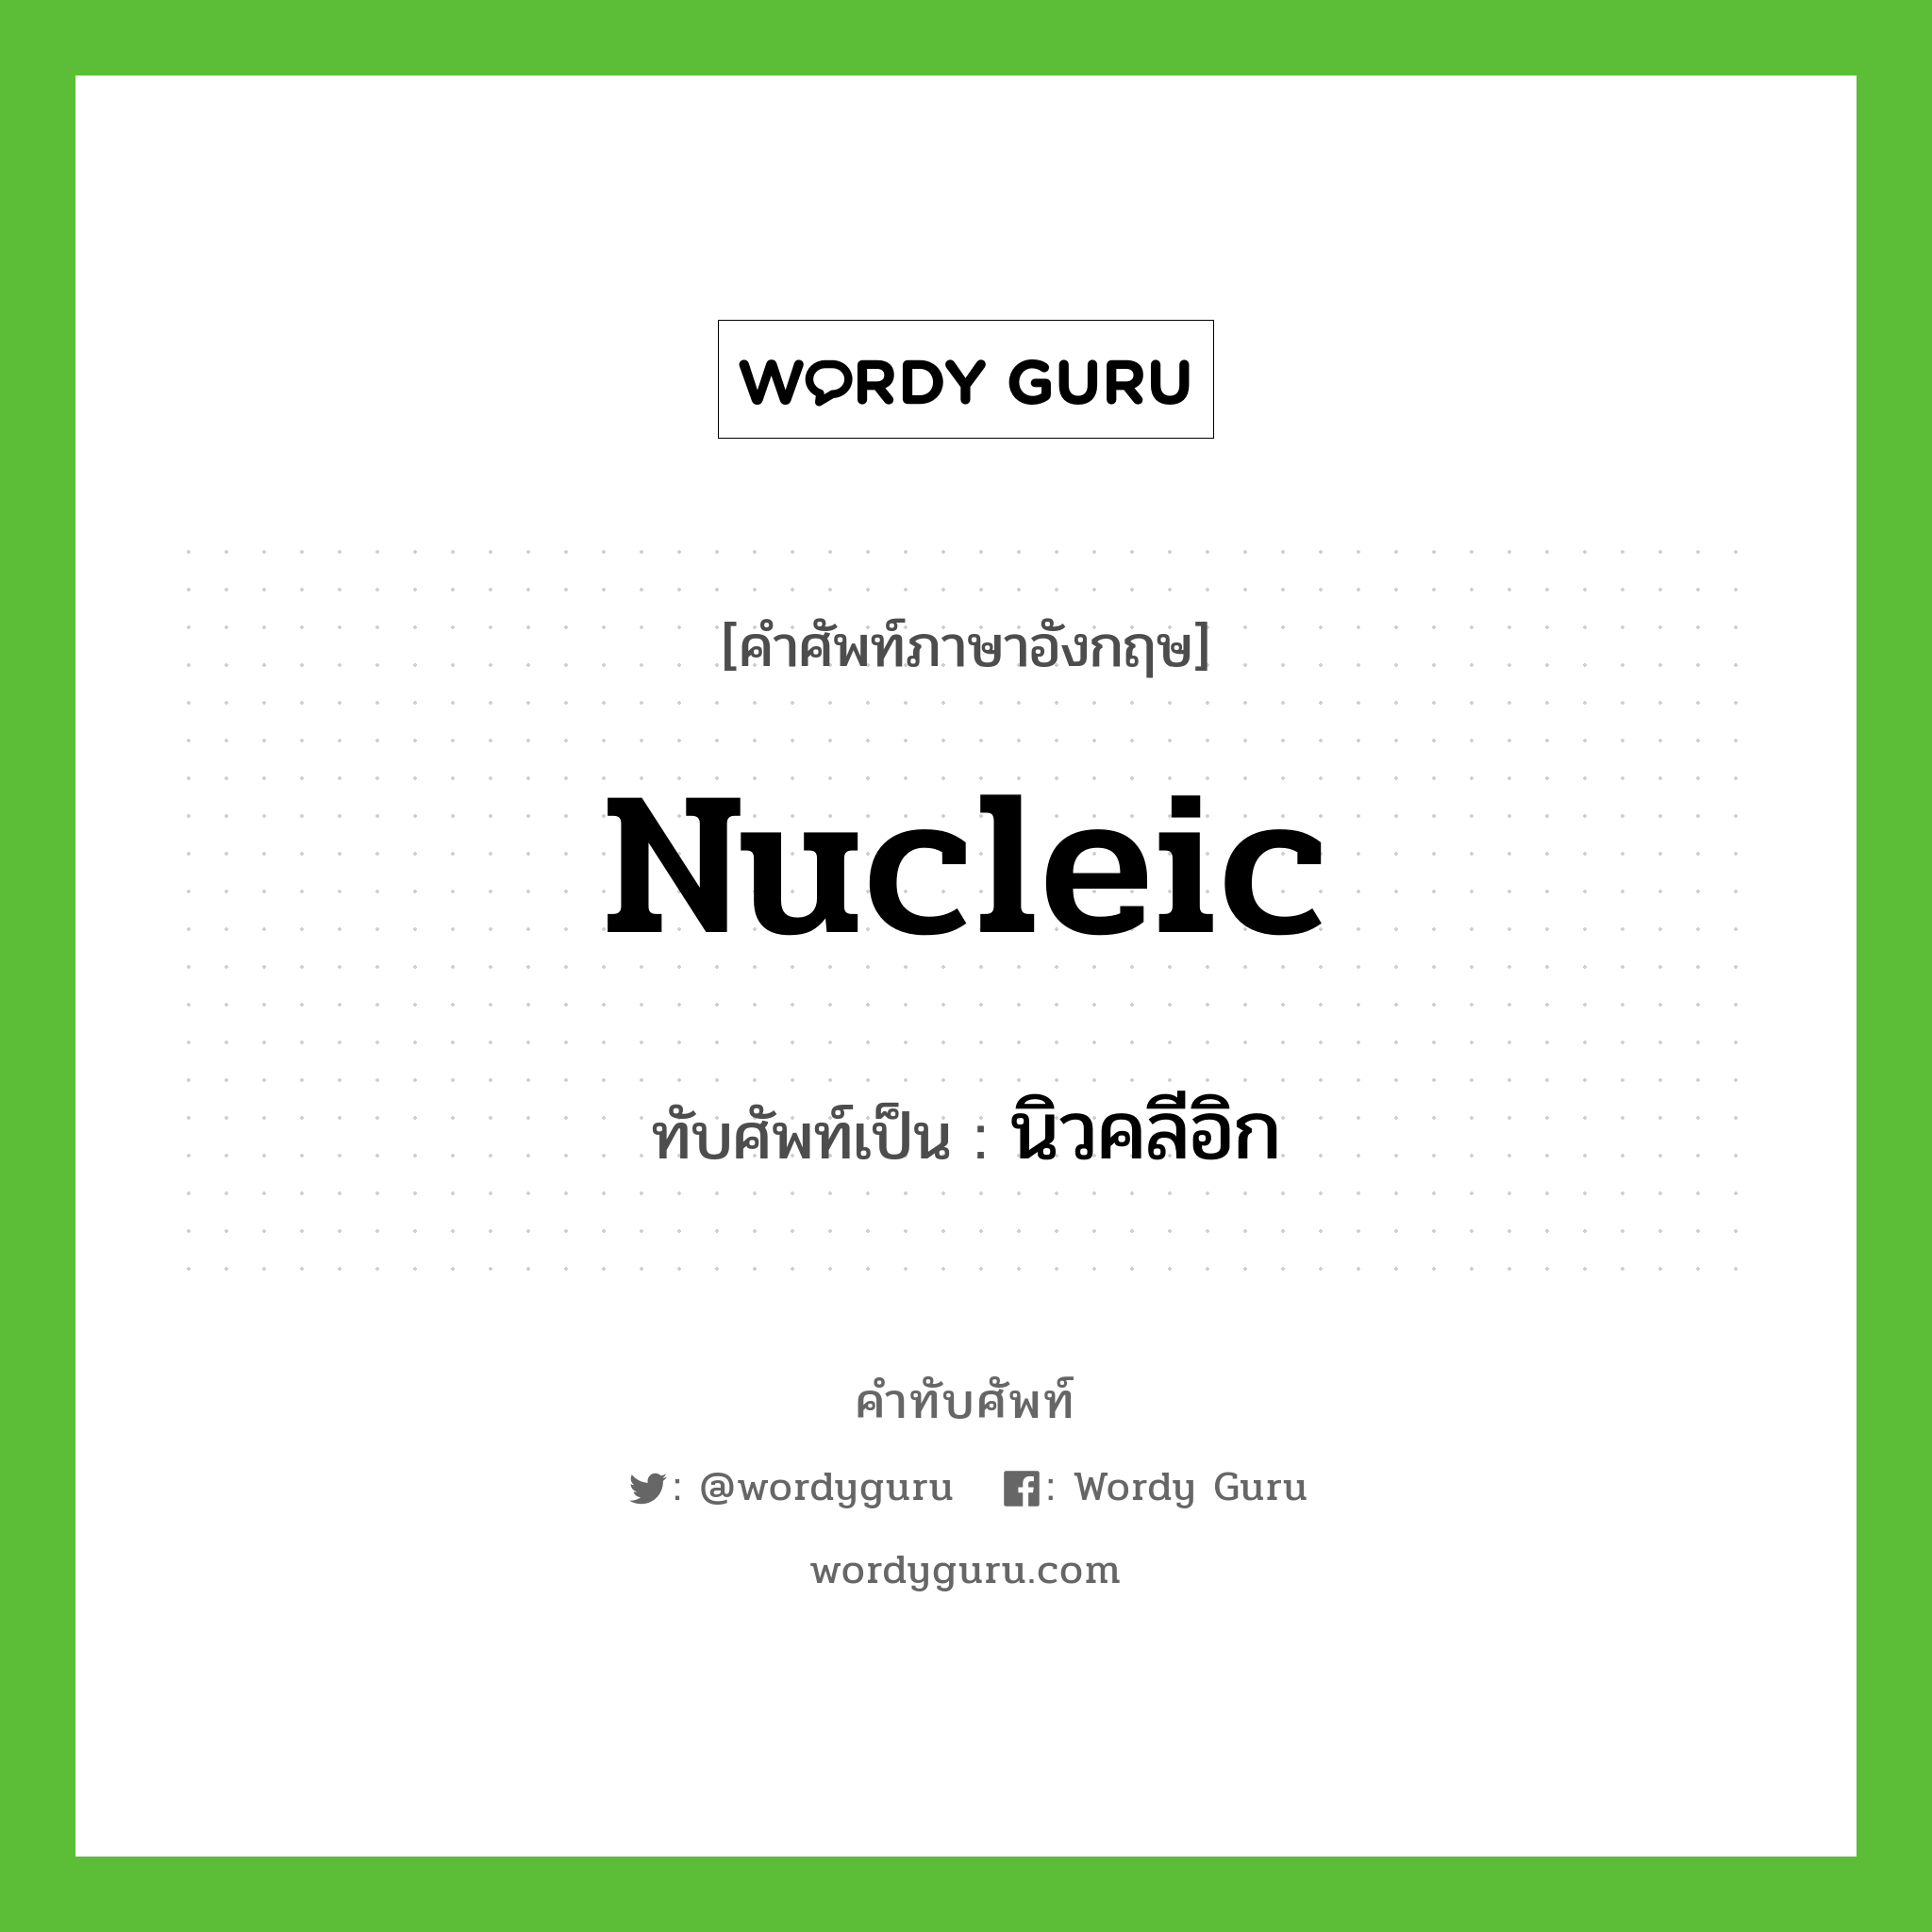 nucleic เขียนเป็นคำไทยว่าอะไร?, คำศัพท์ภาษาอังกฤษ nucleic ทับศัพท์เป็น นิวคลีอิก